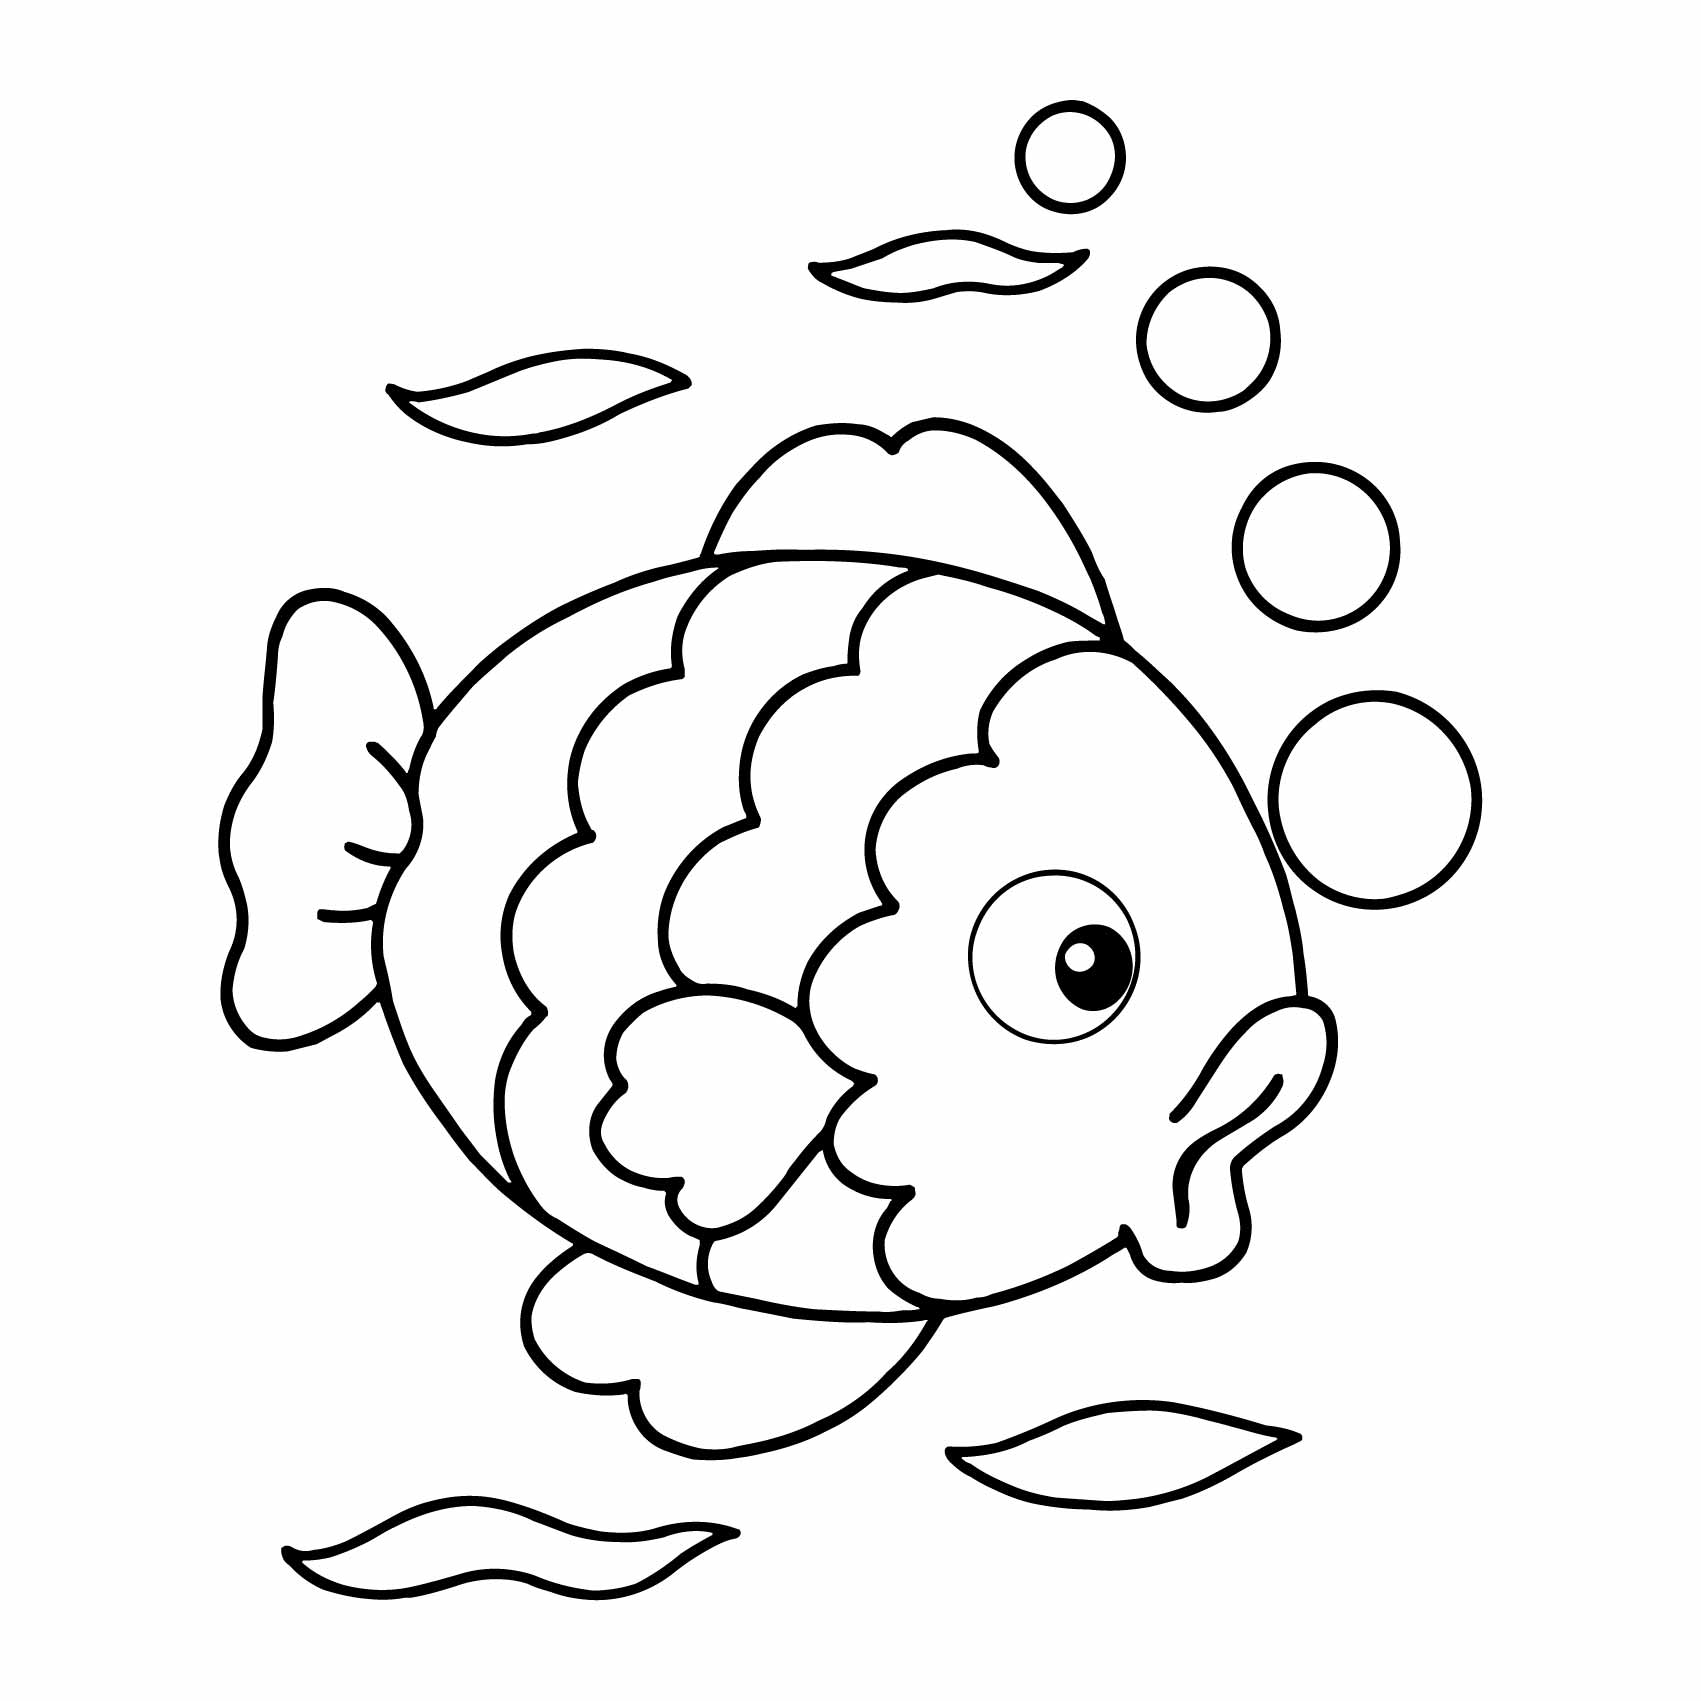 stickers-poisson-dessin-ref14animauxmarins-stickers-muraux-poisson-autocollant-mural-poisson-sticker-chambre-enfant-bébé-garcon-fille-decoration-deco-(2)